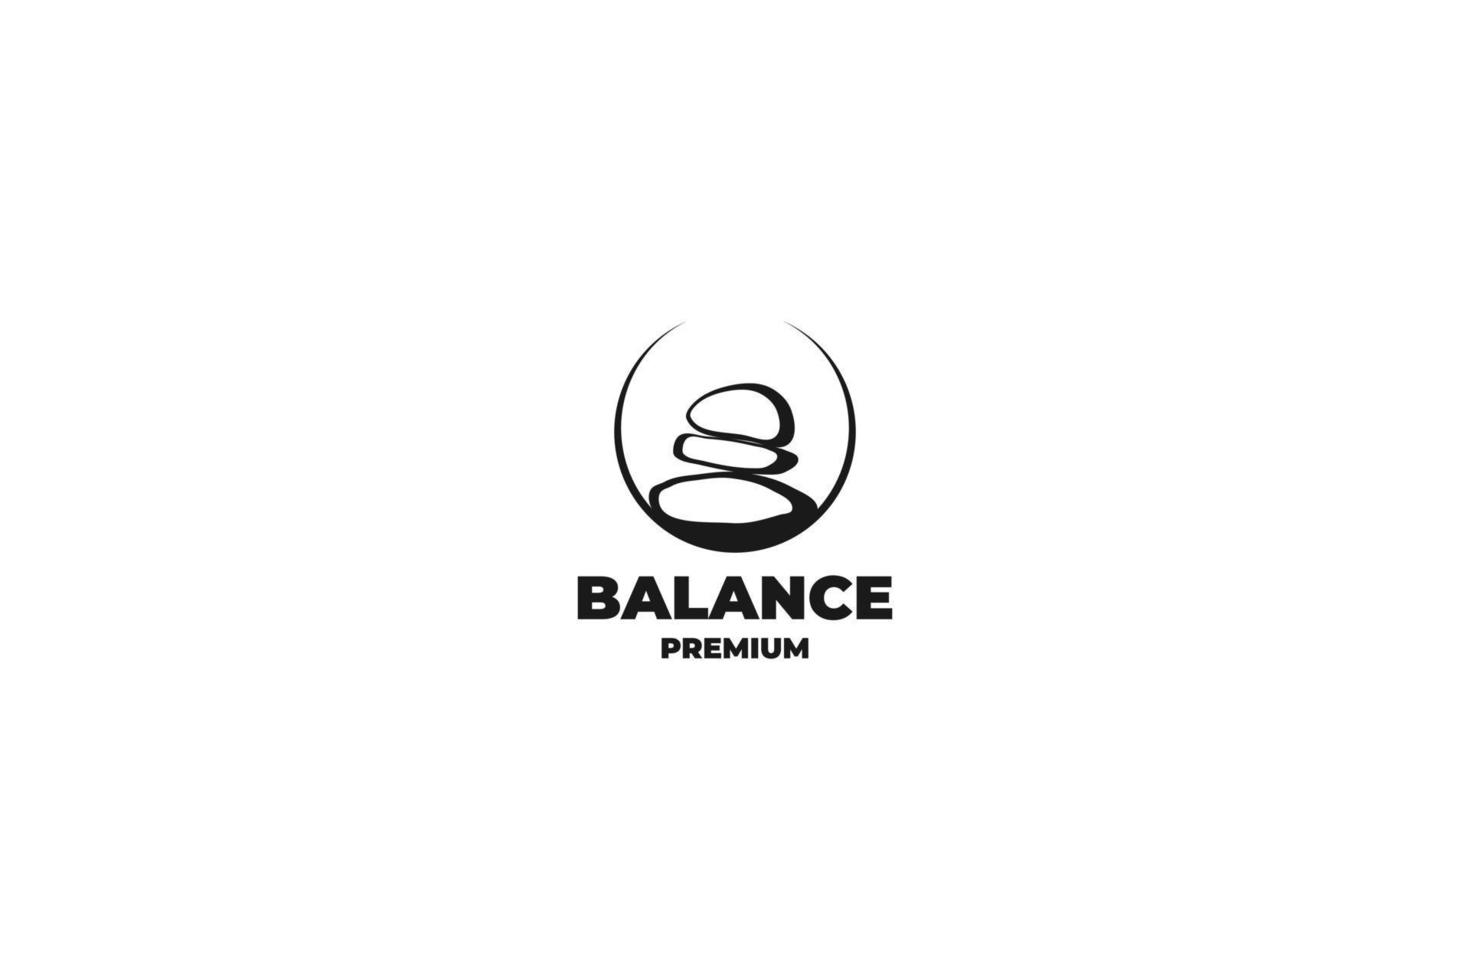 Zen stone rock balancing logo design vector template